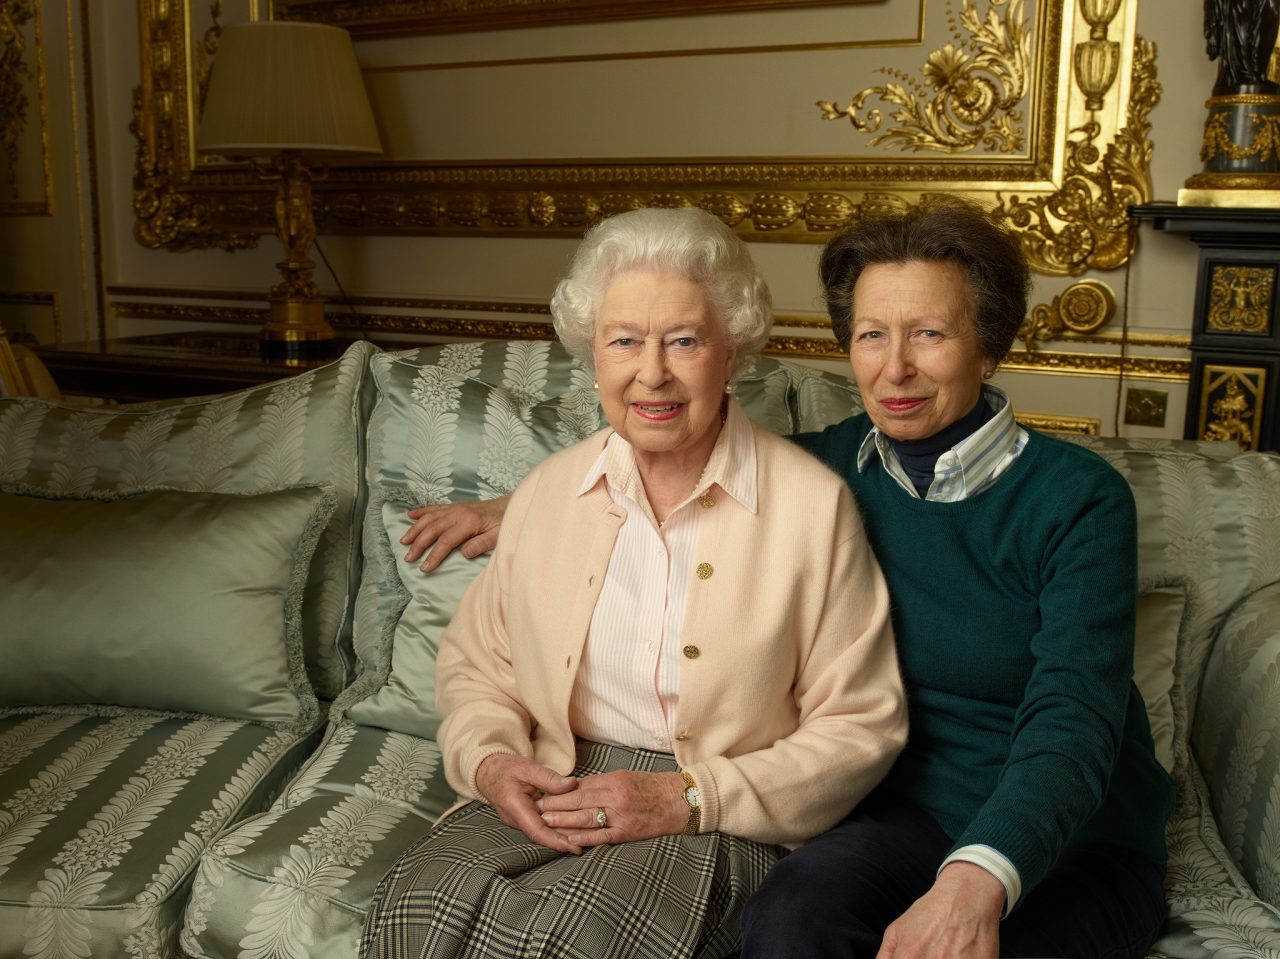 Βασίλισσα Ελισάβετ: Η πριγκίπισσα Άννα αποχαιρετά τη μητέρα της - «Τιμή να τη συνοδεύσω στο τελευταίο της ταξίδι»